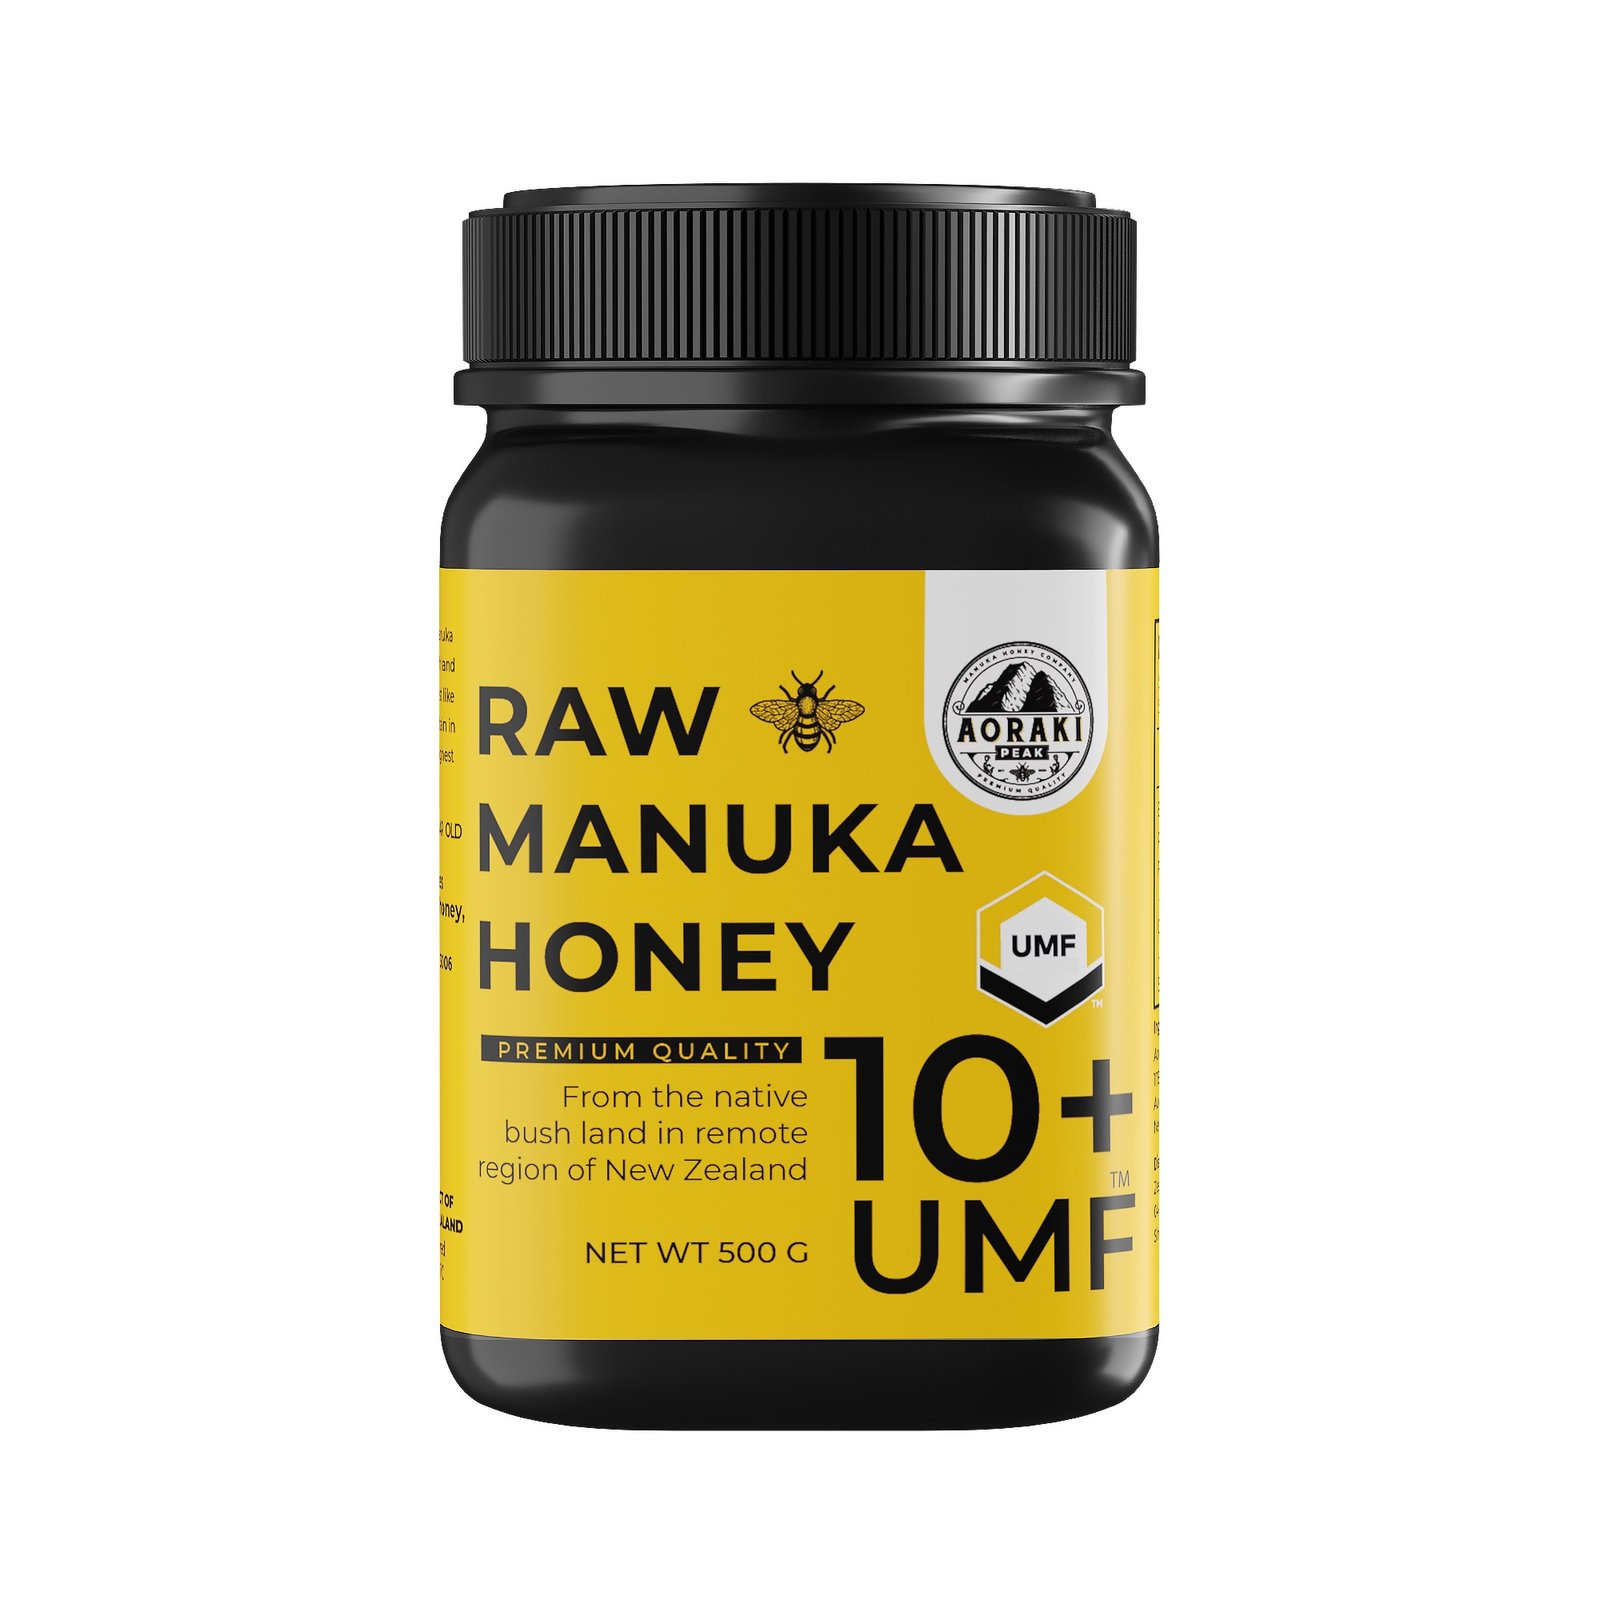 Aorakipeak Manuka honey UMF10+